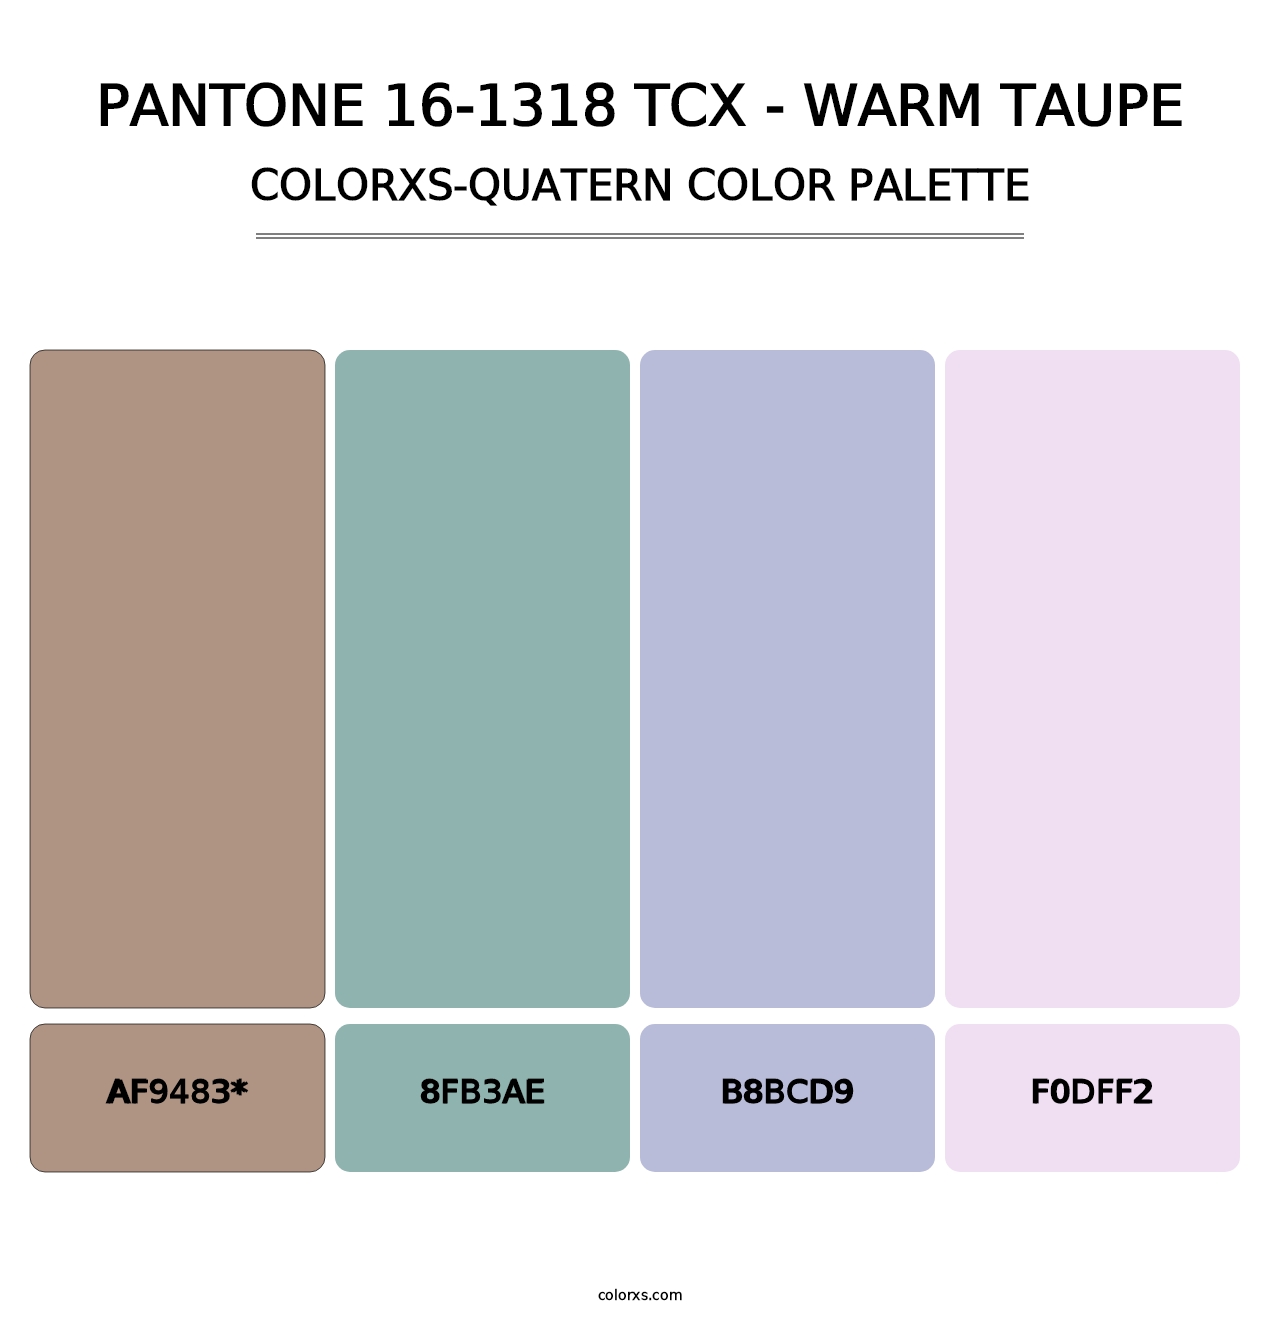 PANTONE 16-1318 TCX - Warm Taupe - Colorxs Quatern Palette